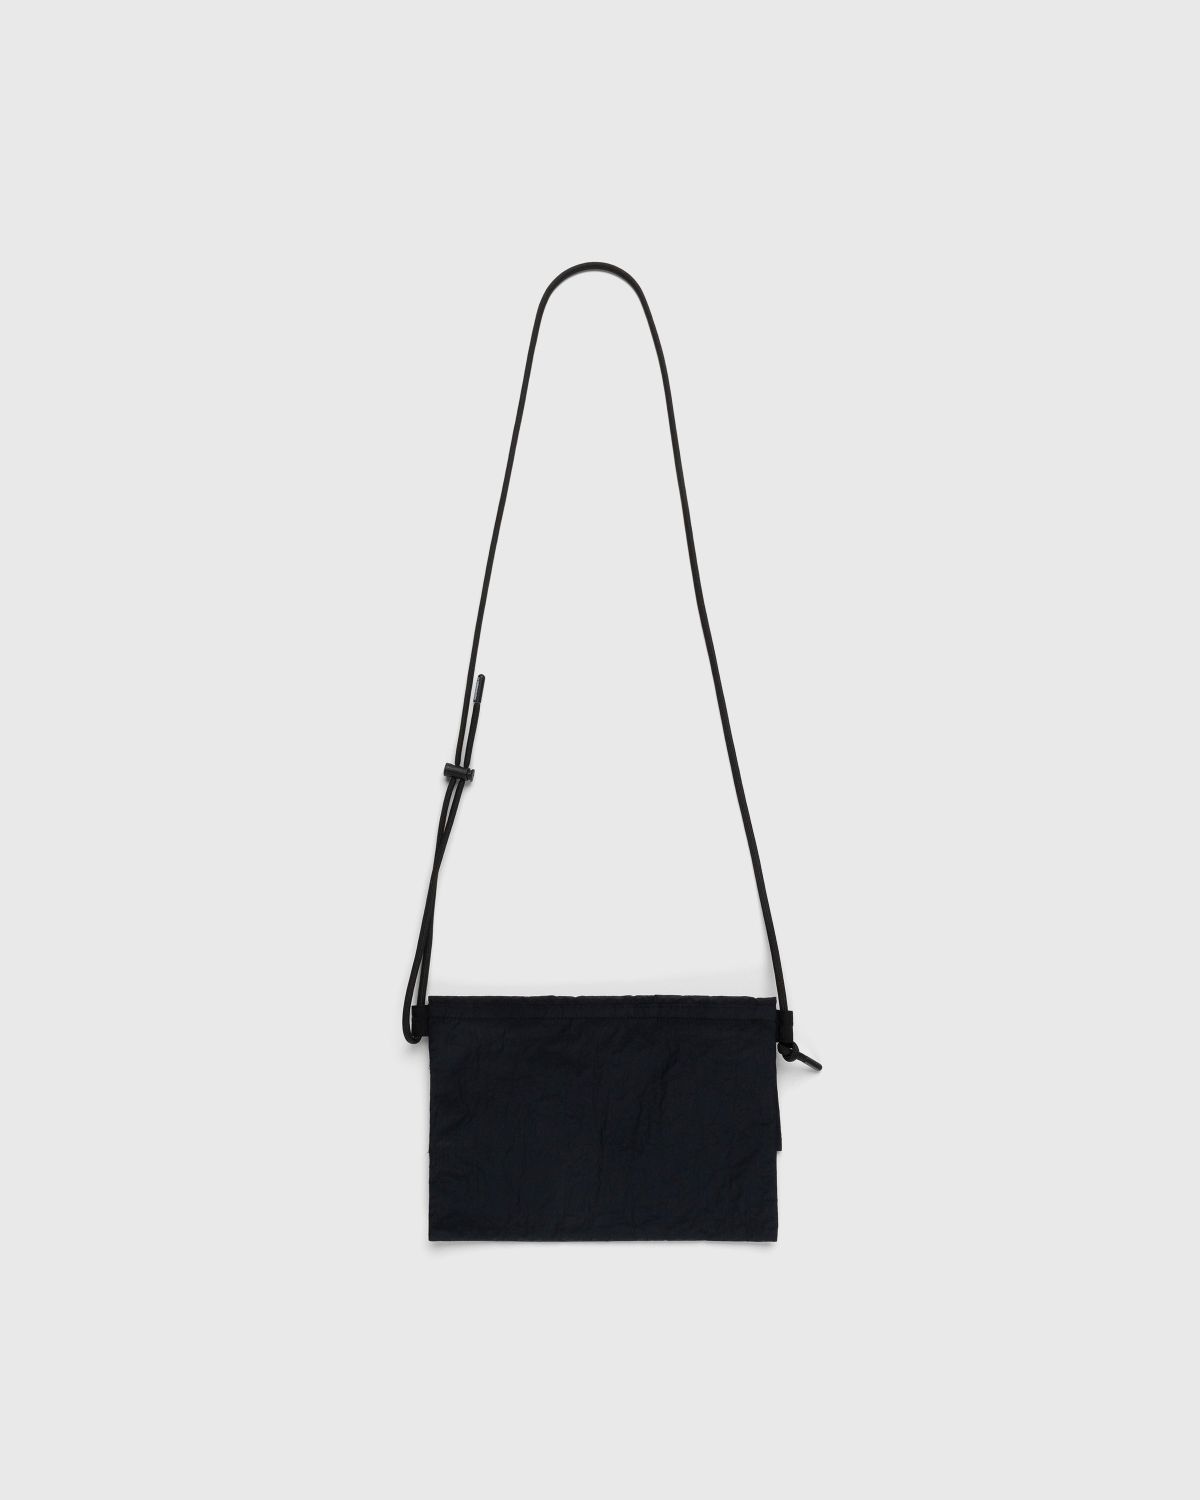 Highsnobiety – Nylon Side Bag Black - Pouches - Black - Image 2